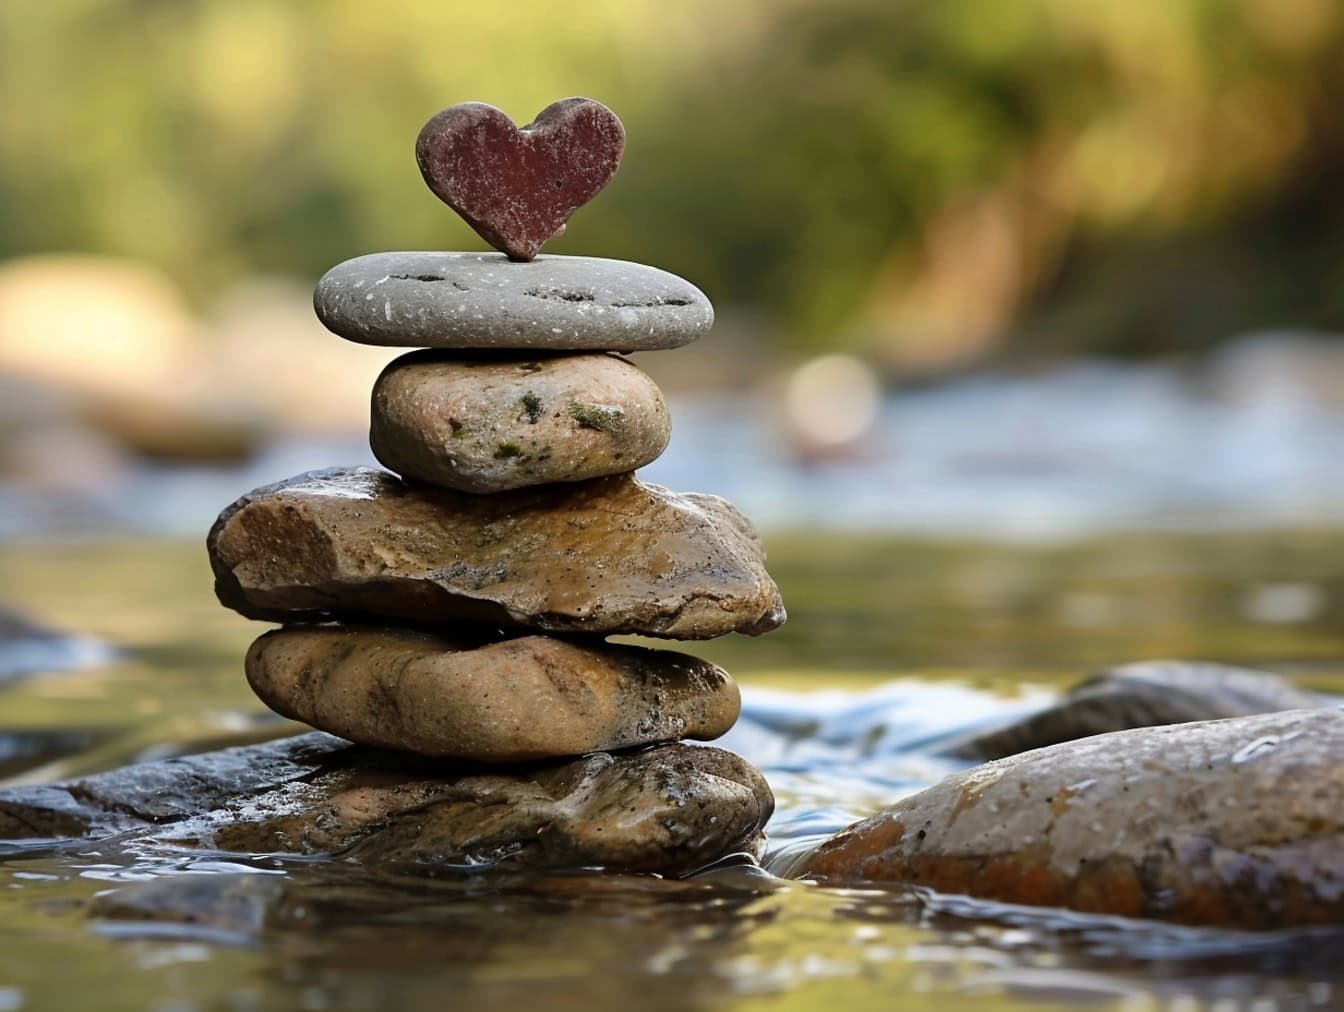 Pedras empilhadas umas sobre as outras na margem de um rio com uma pedra em forma de coração no topo, uma ilustração de equilíbrio e harmonia no amor